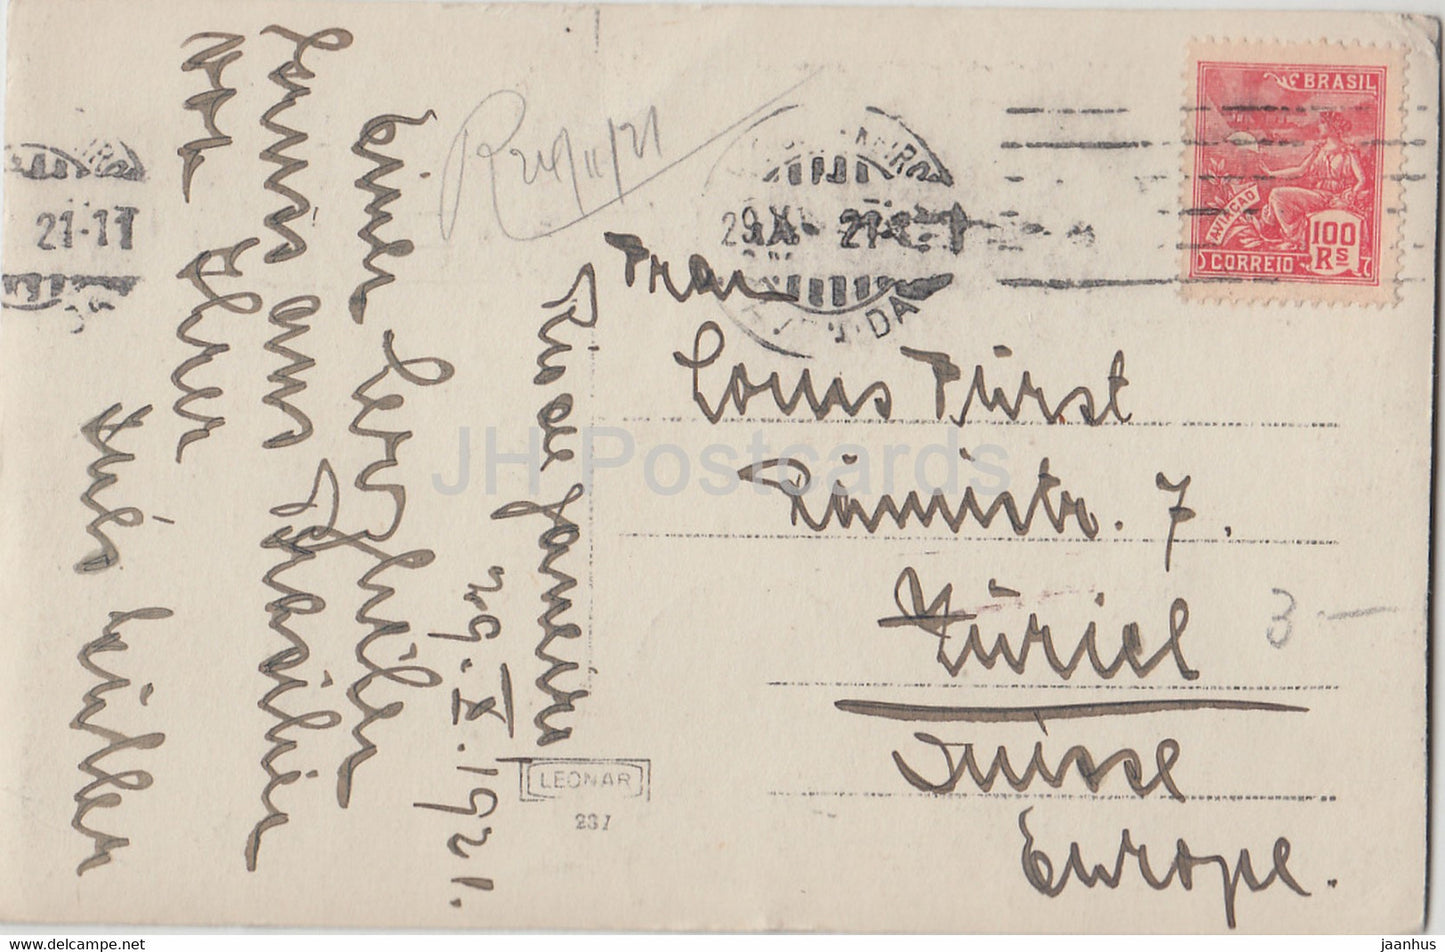 Rio de Janeiro - Le Fort de Santa Cruz - 237 - carte postale ancienne - 1921 - Brésil - occasion